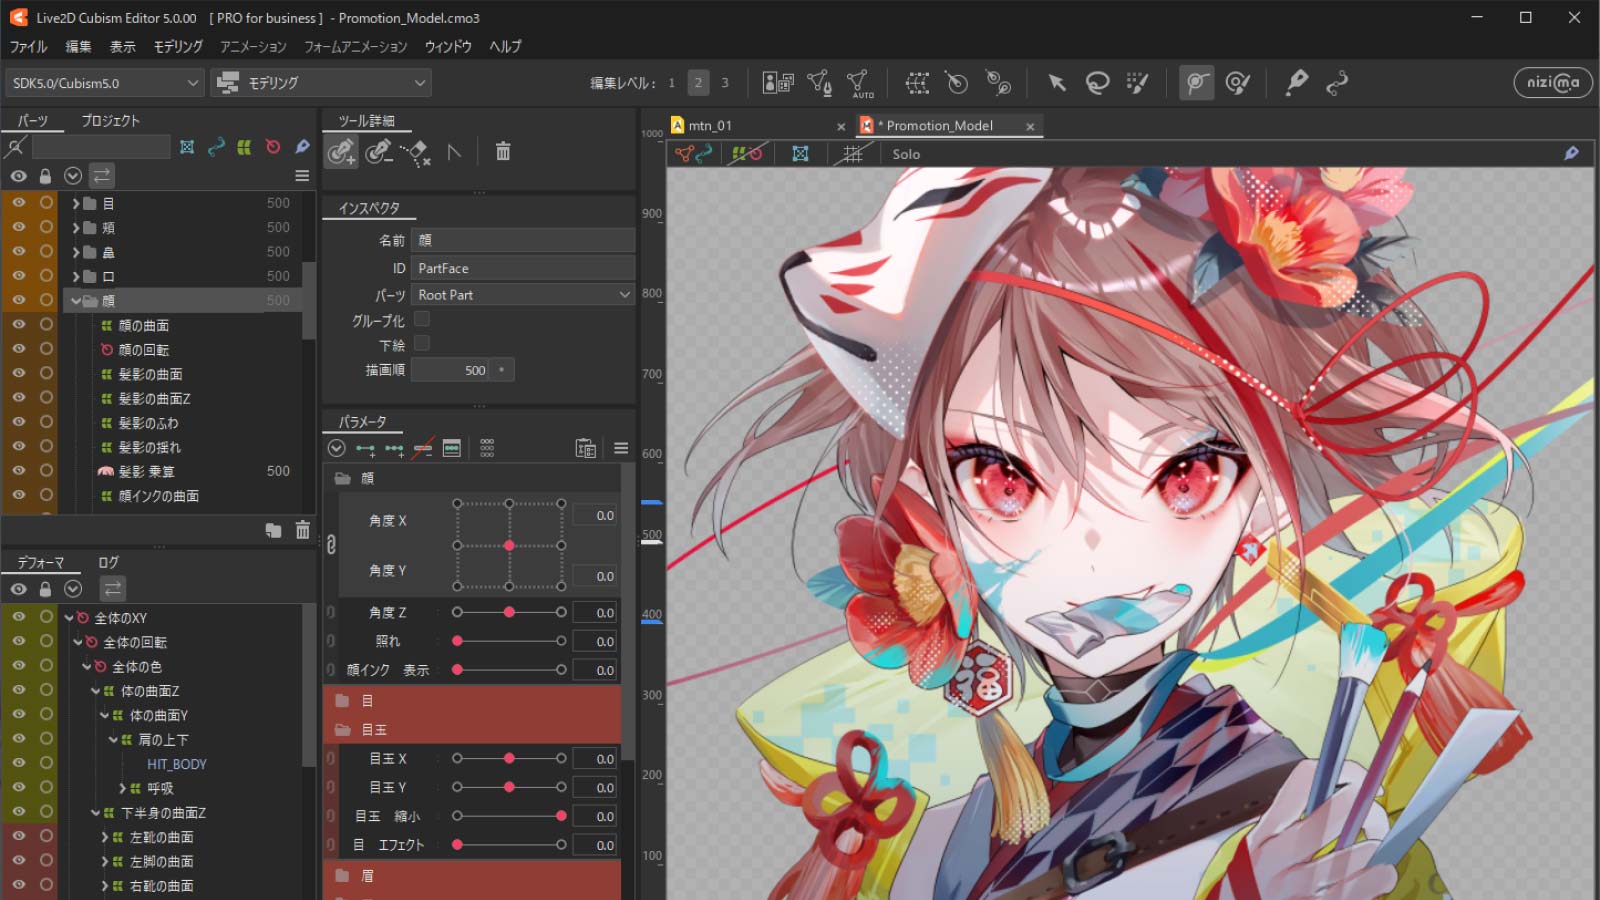 Live2D Cubism Editor 5.0.00 動作環境